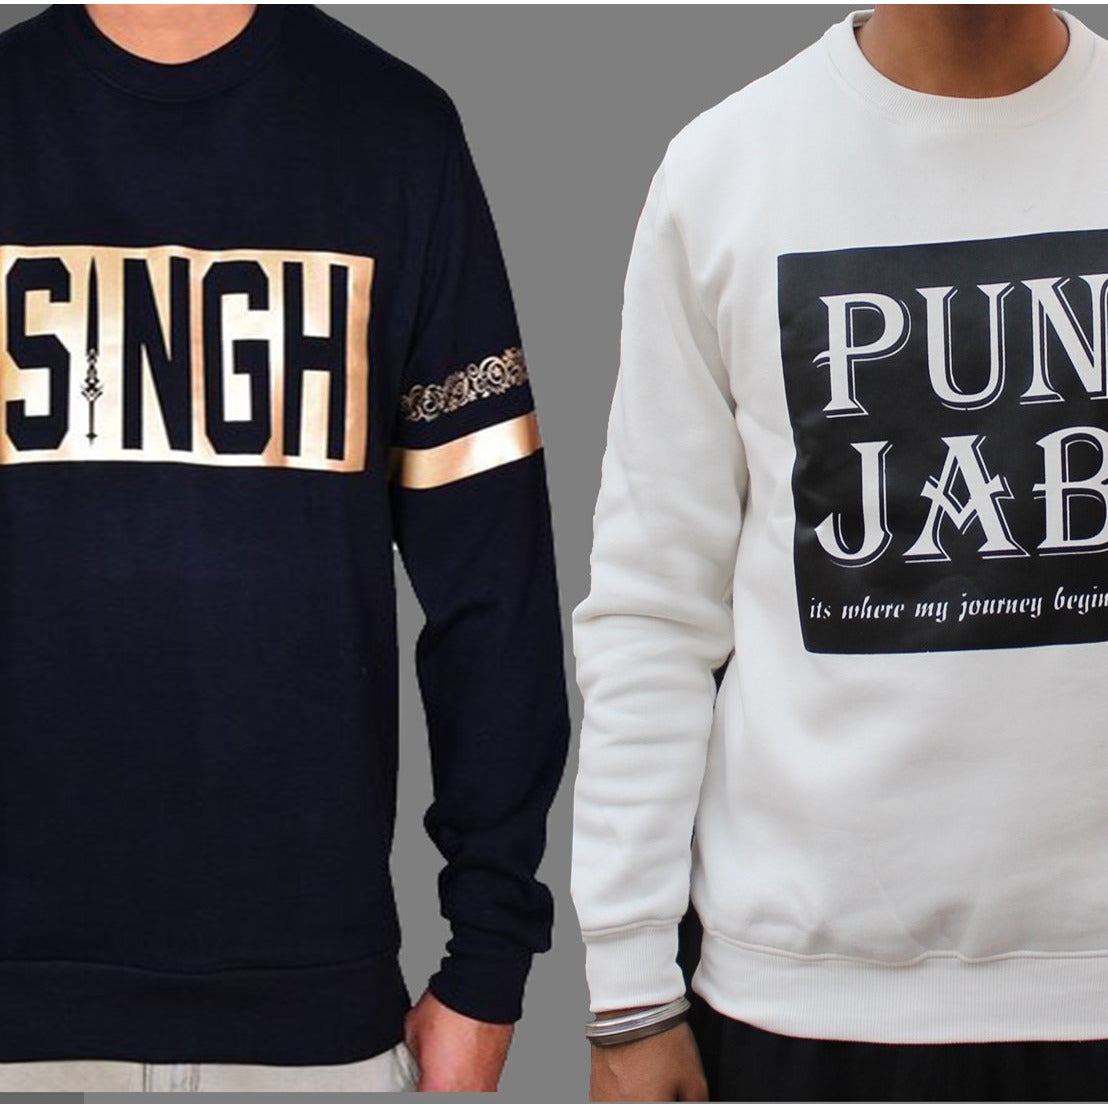 Singh and Punjab SweatShirt Pack